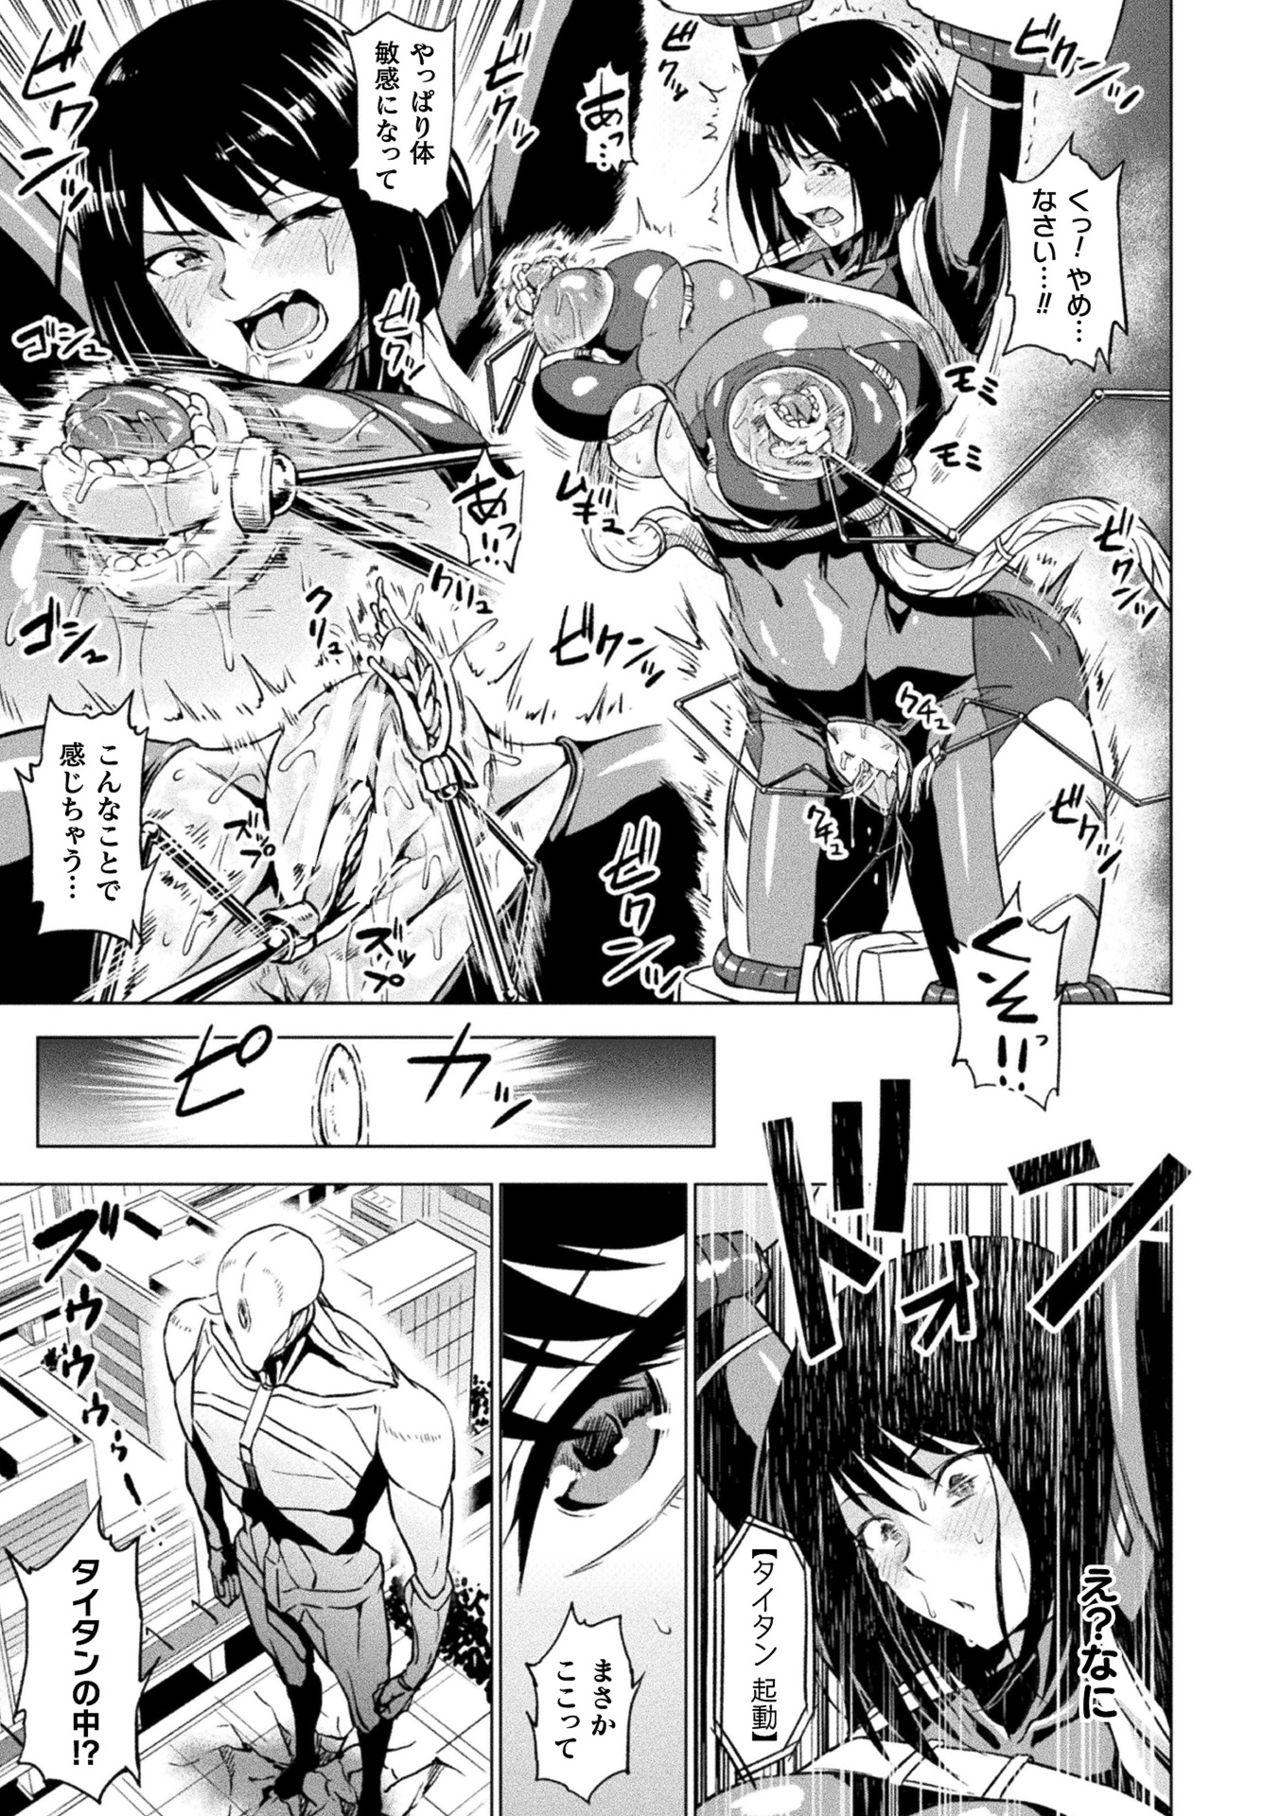 Crazy 2D Comic Magazine - Seitai Unit Kikaikan Vol.1 Eurobabe - Page 7